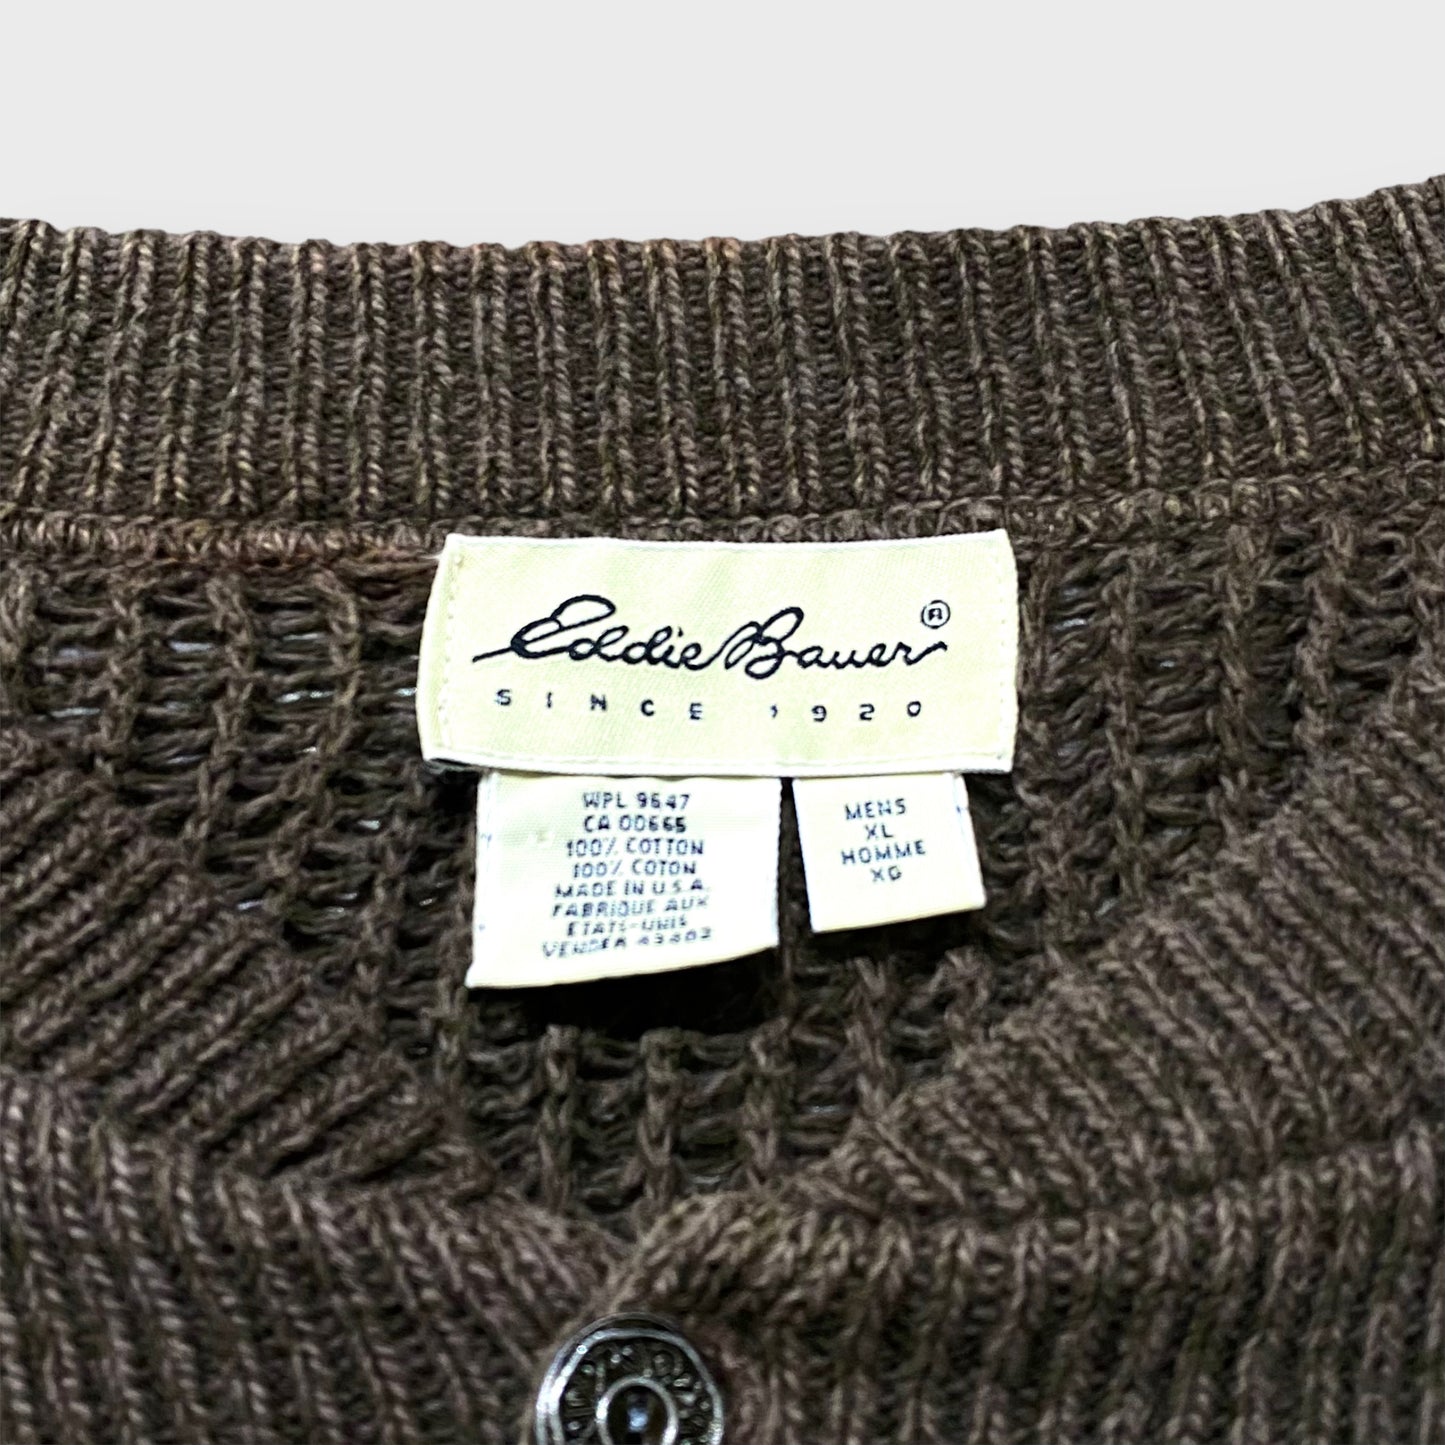 "Eddie Bauer" Henry neck knit sweater